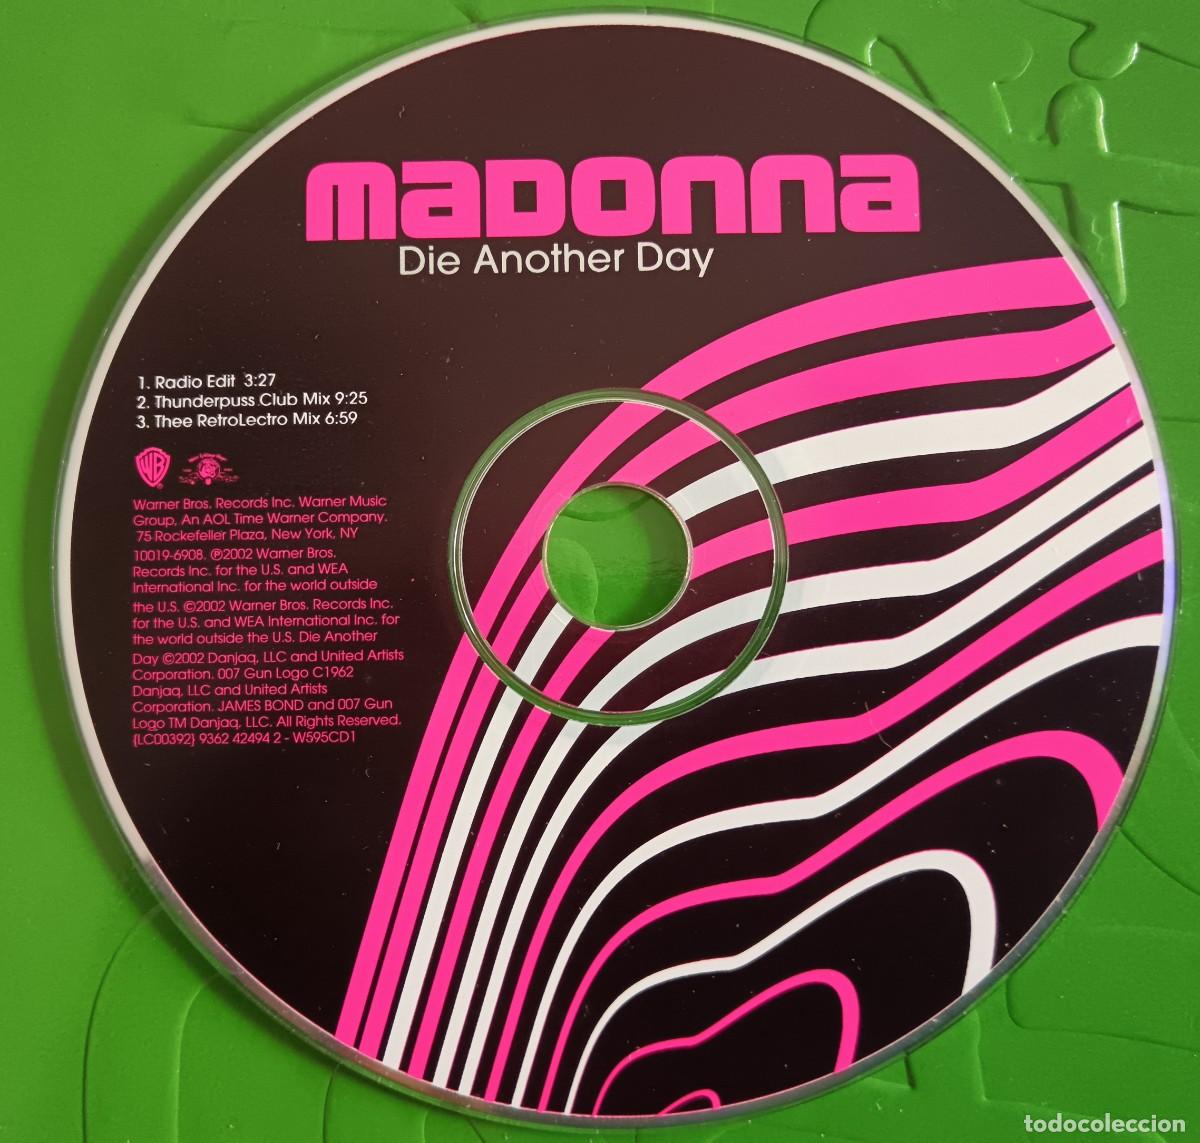 madonna cd single die another day - Compra venta en todocoleccion